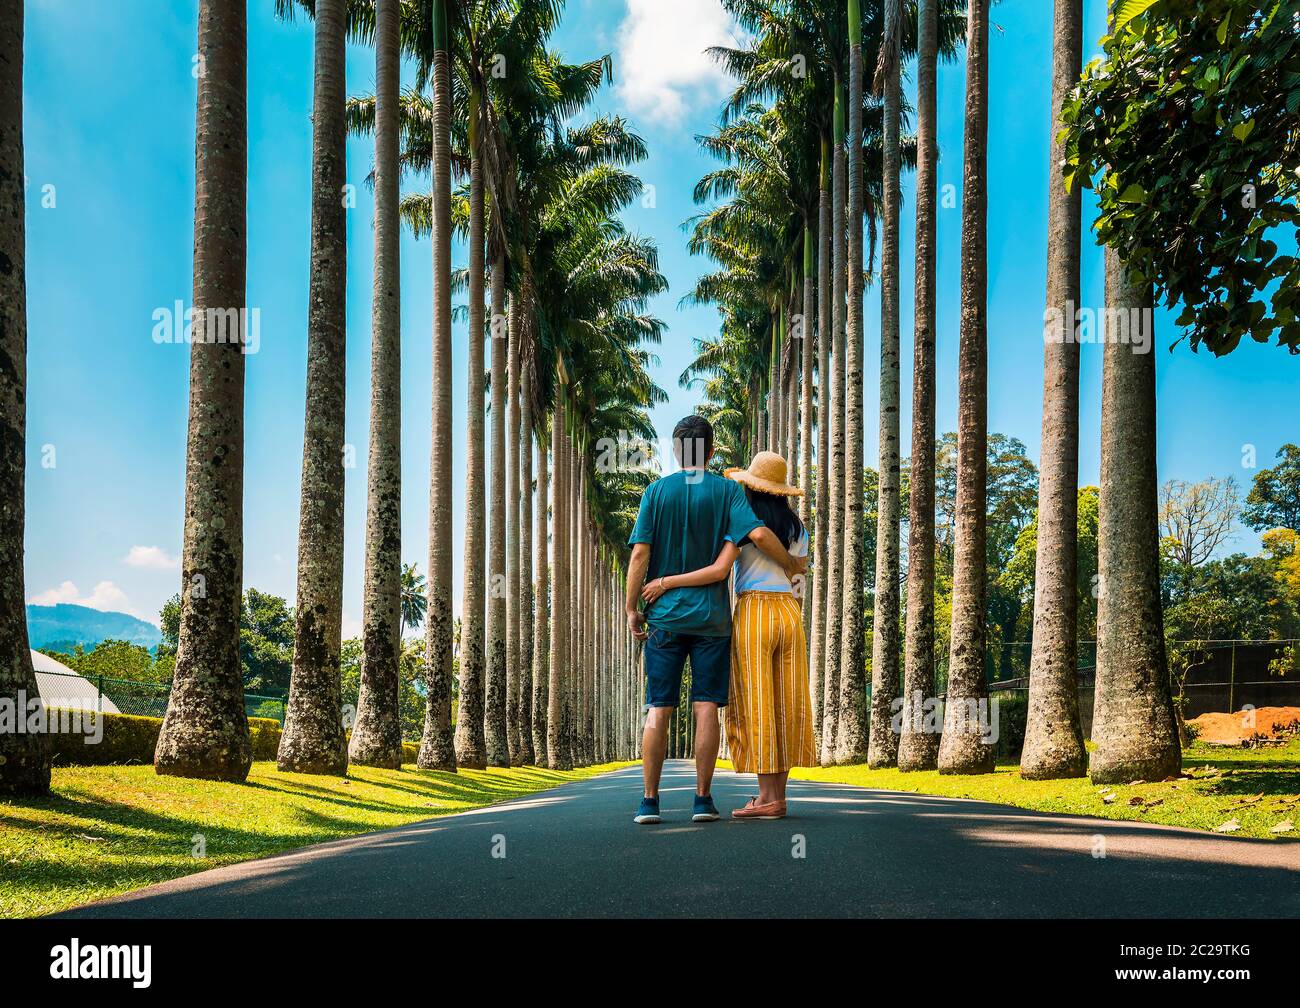 Couple visitant la palmeraie des jardins botaniques royaux de Kandy au Sri Lanka. Paysage tropical asiatique paysage Voyage Banque D'Images